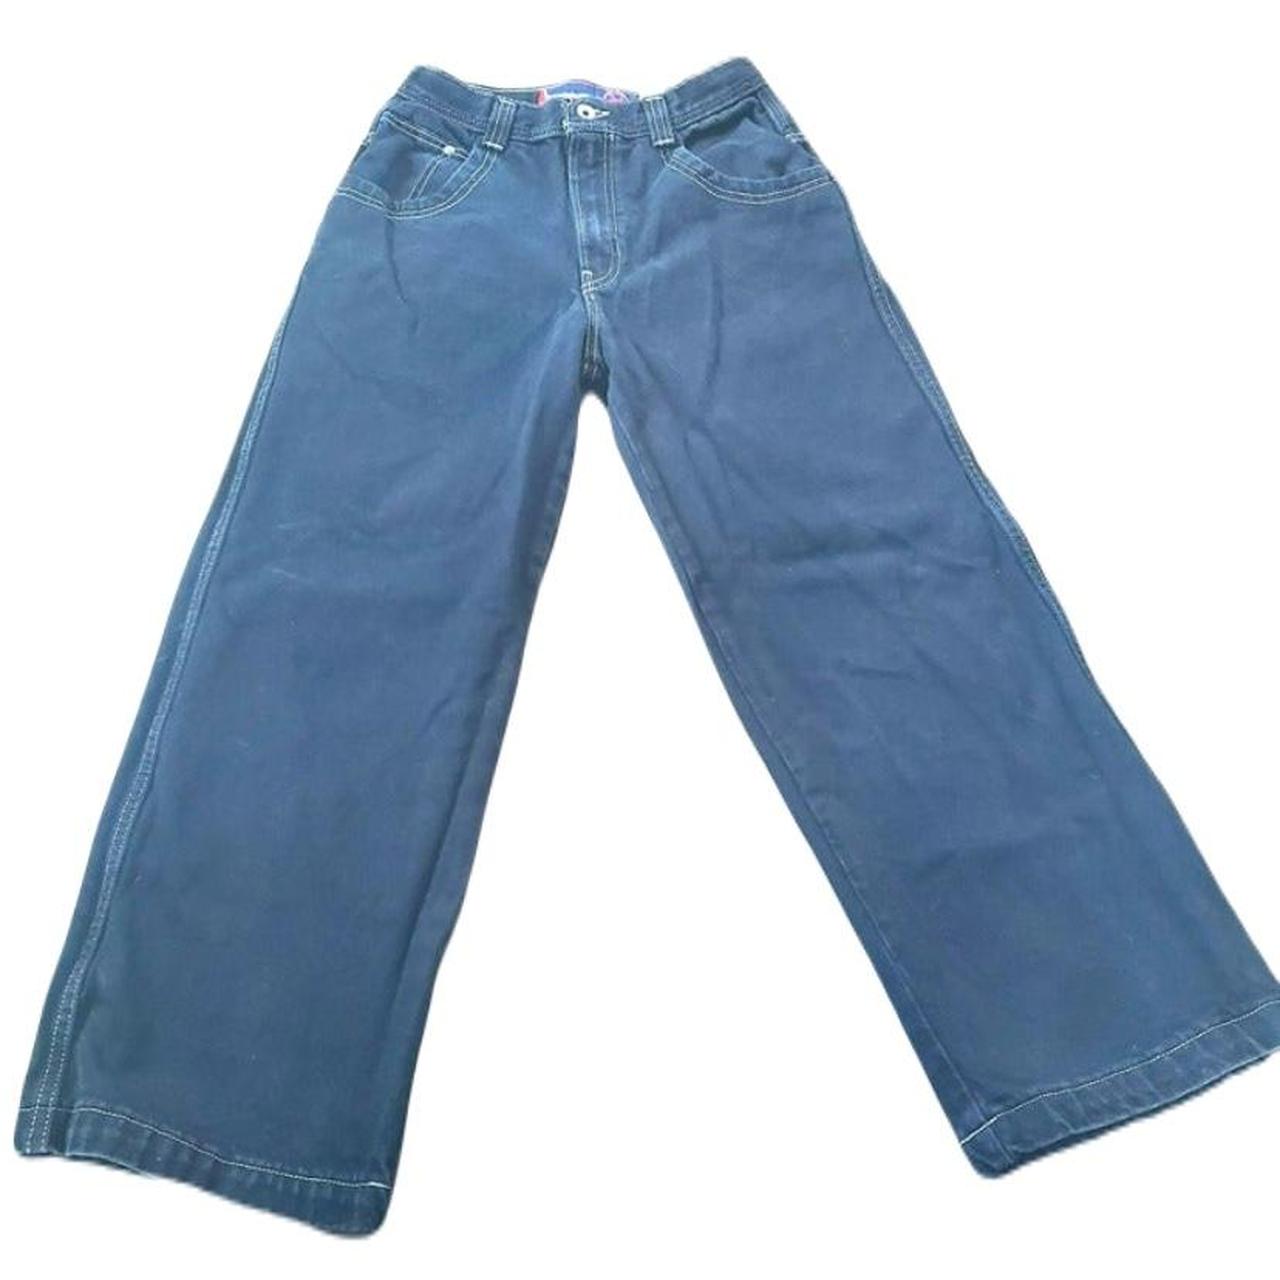 Vintage Black Big Pocket Baggy Dragon JNCO Jeans Sz... - Depop